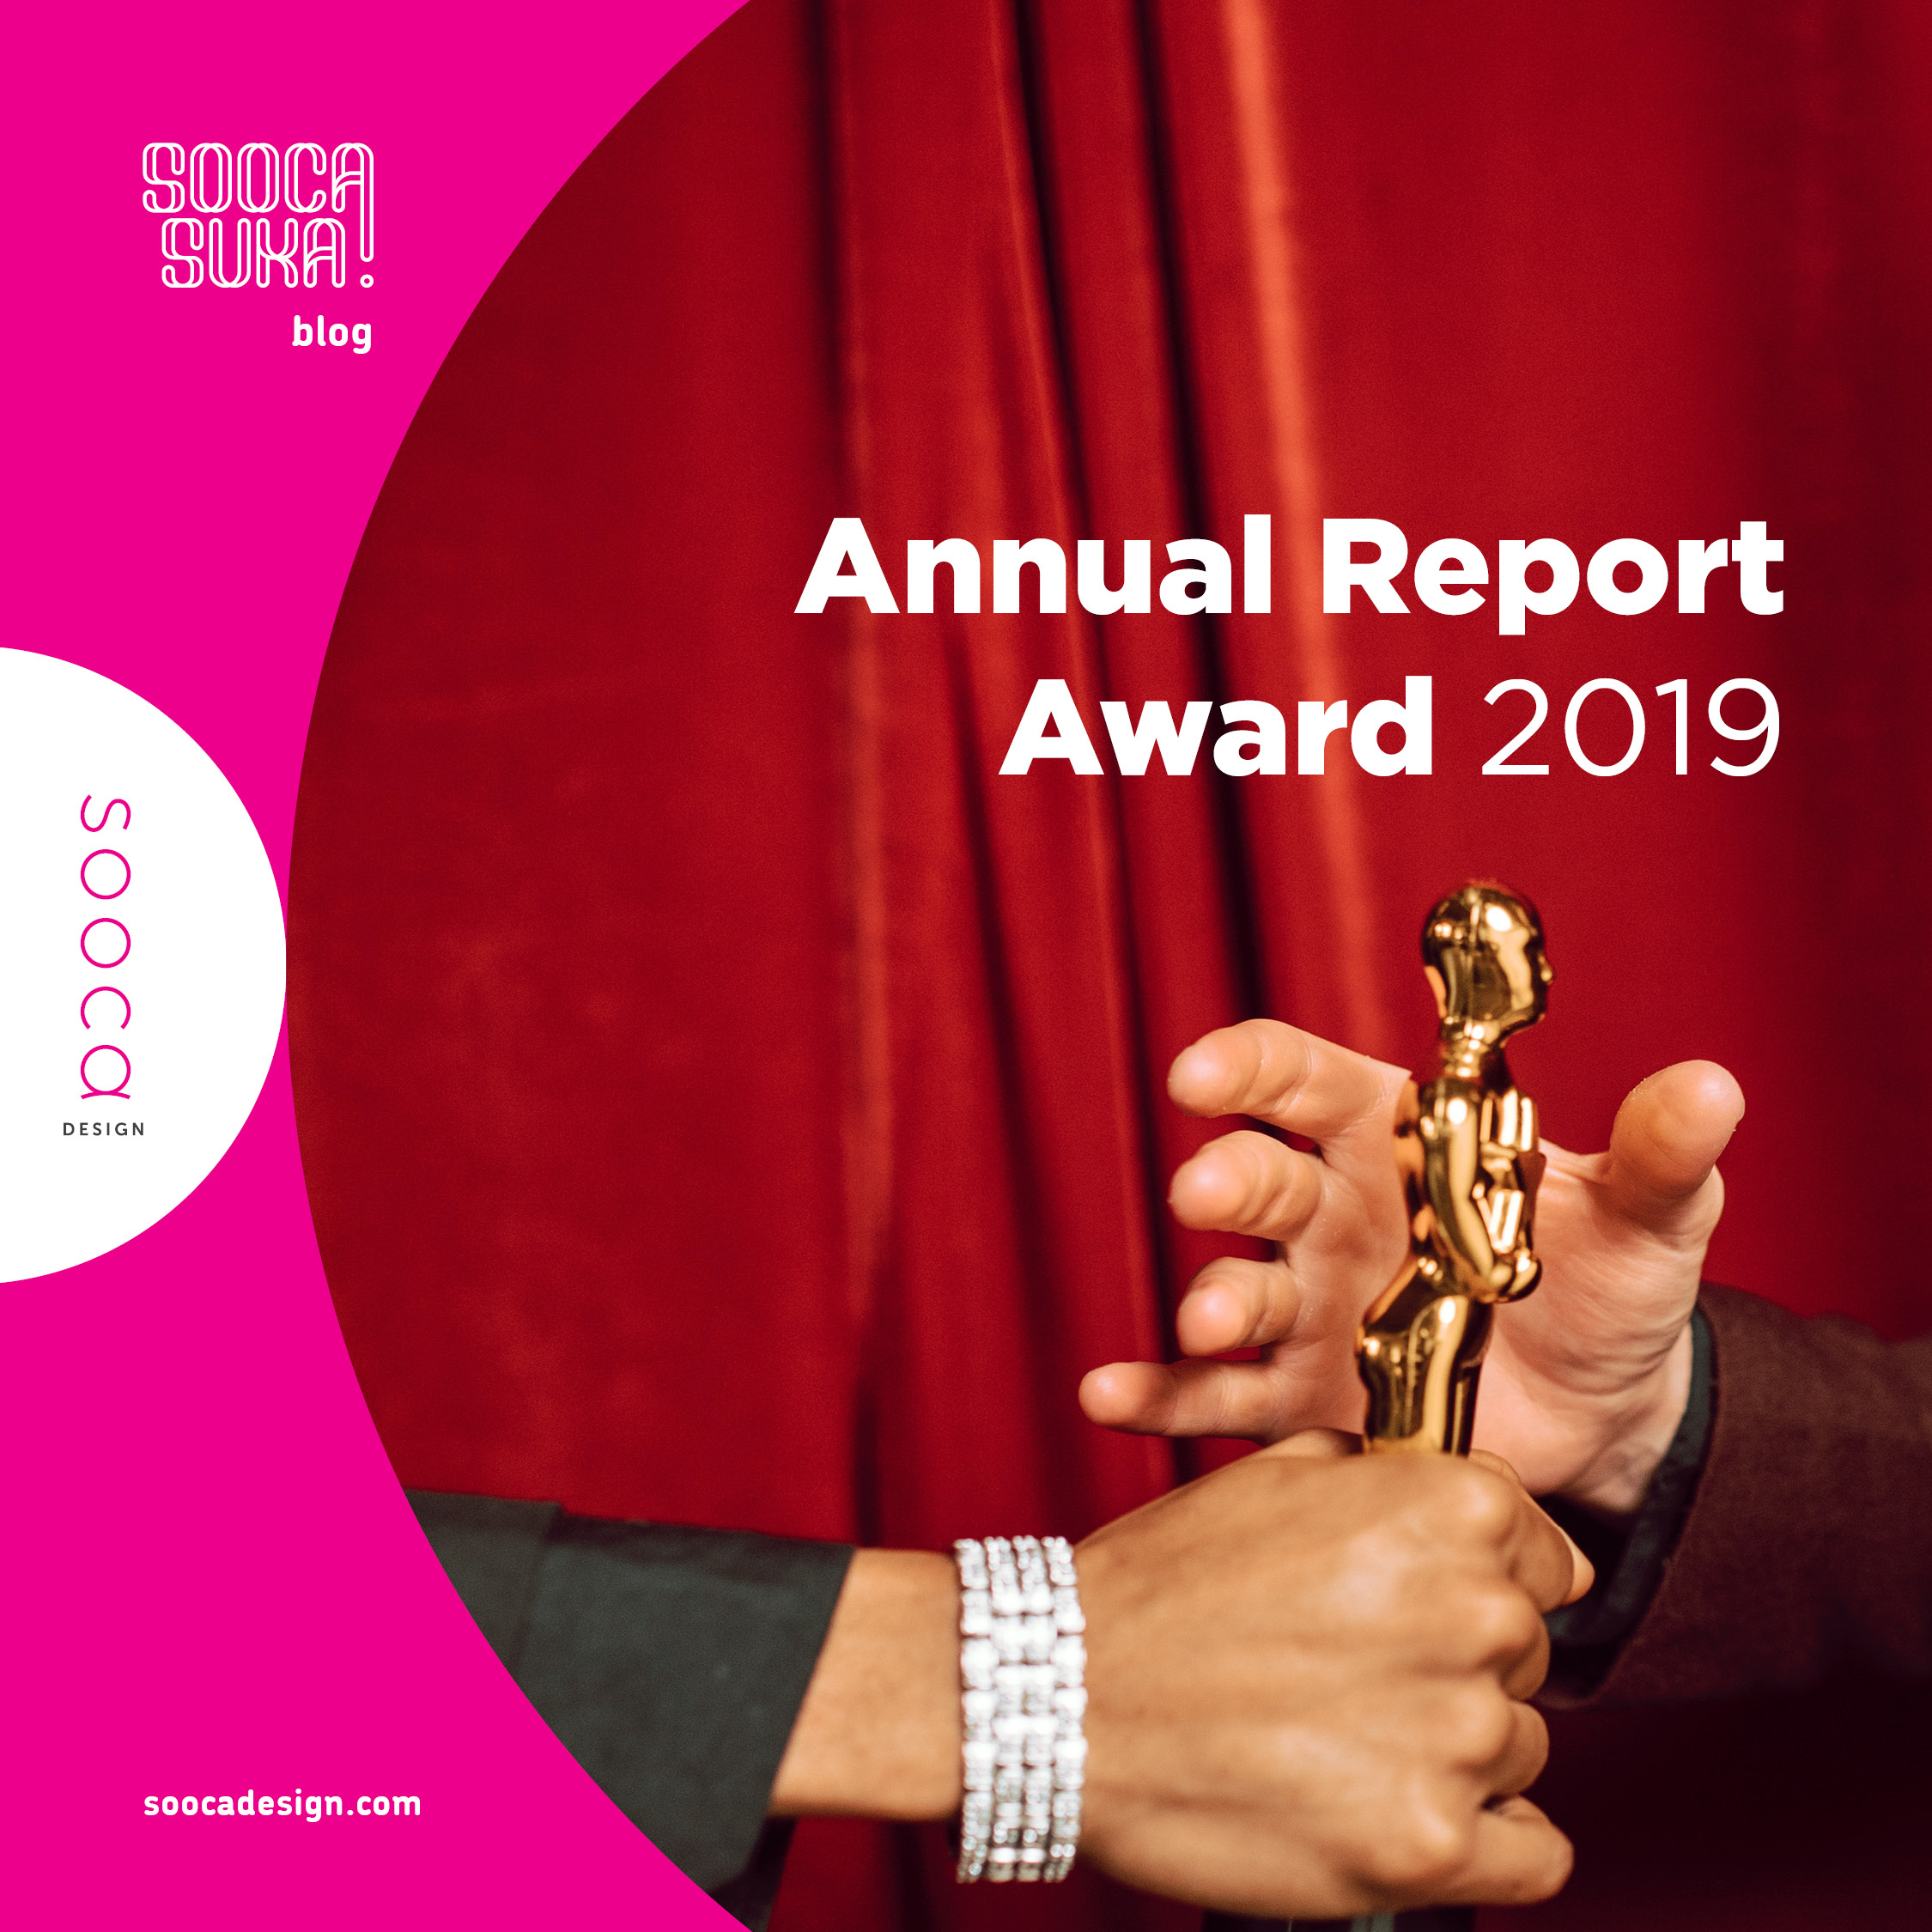 daftar pemenang annual report award 2019 berdasarkan kategorinya